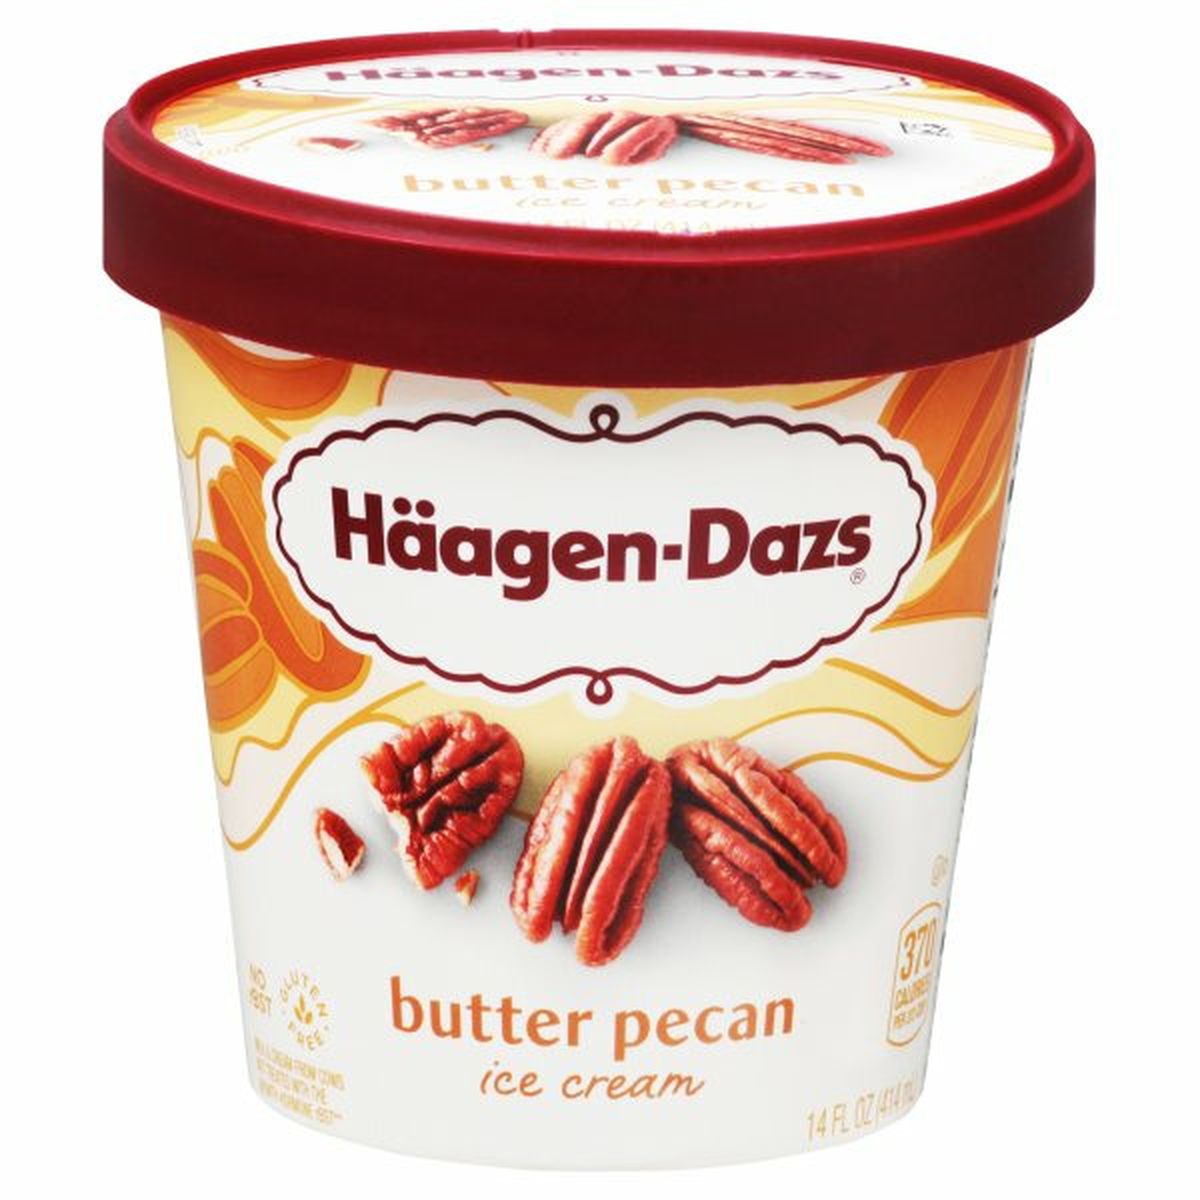 Calories in Haagen-Dazs Ice Cream, Butter Pecan